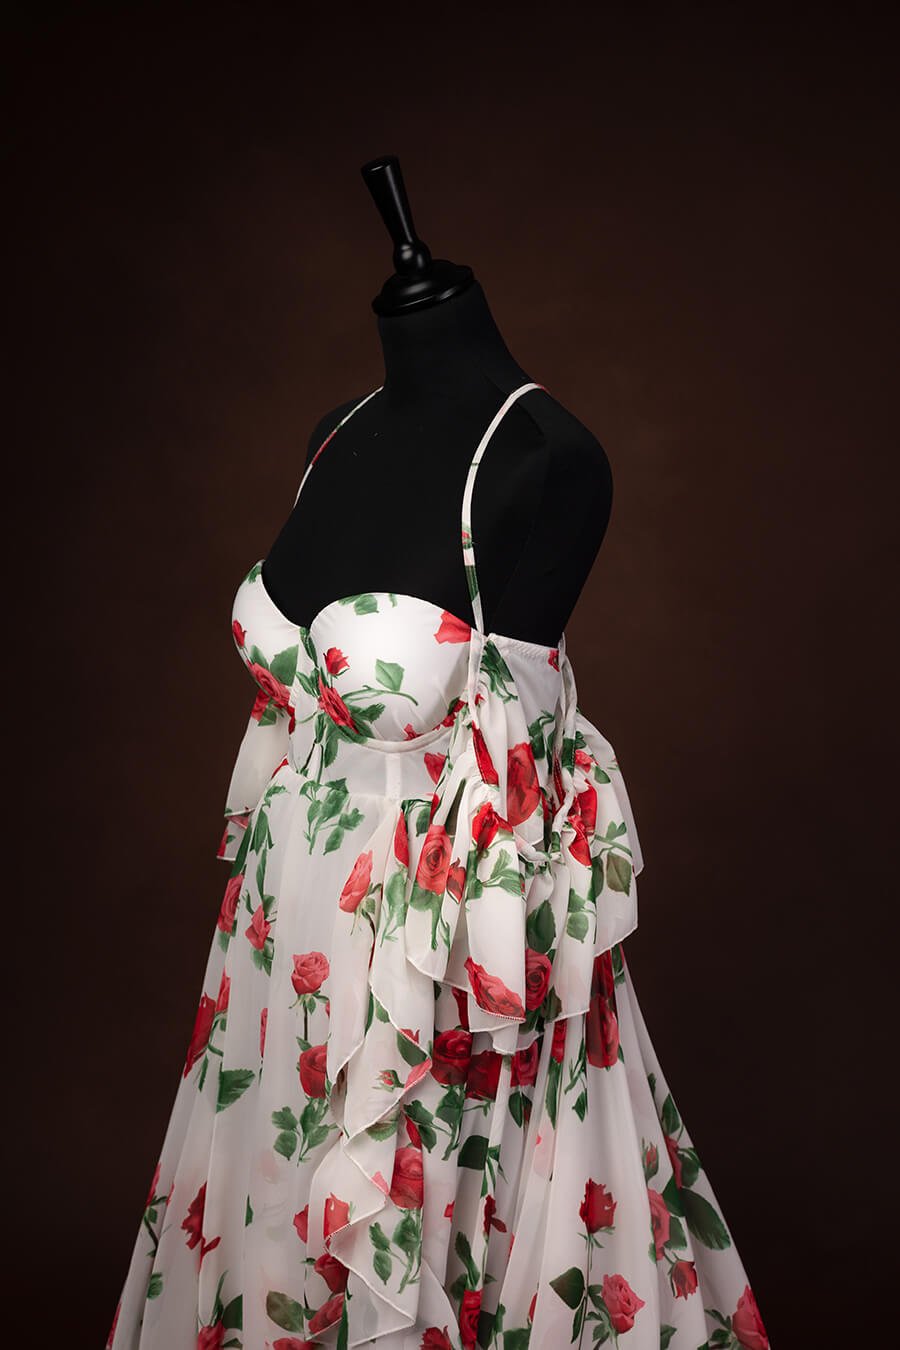 Bourbon Rose Dress Limited Edition - Mii-Estilo.com